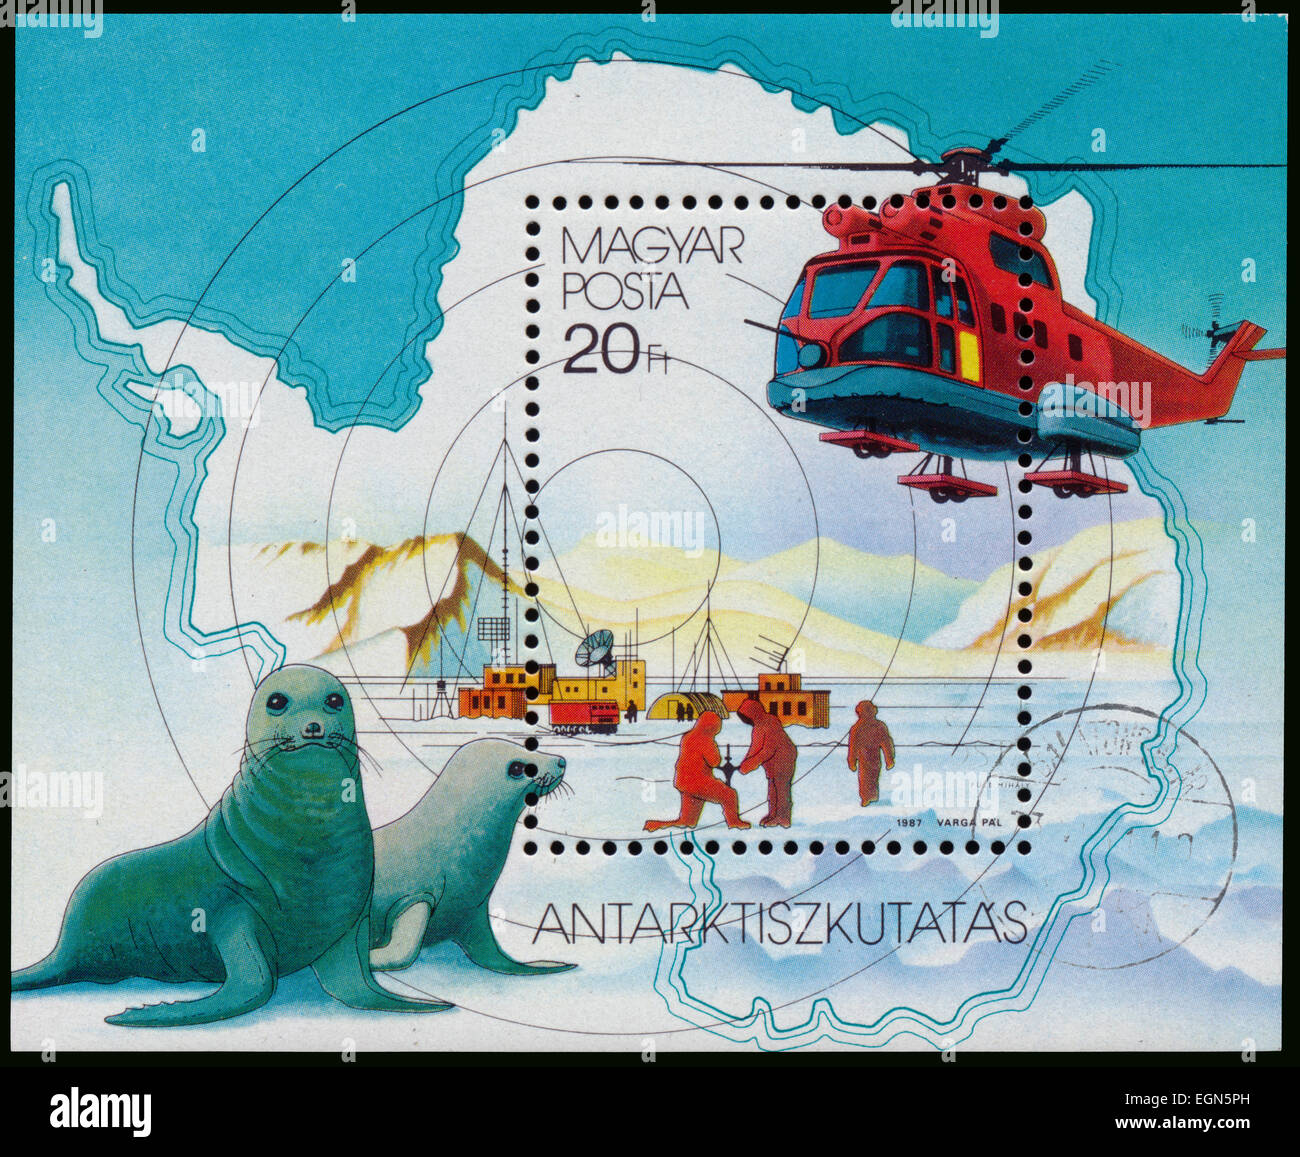 Hongrie - circa 1987 : timbres par la Hongrie, et les joints de l'hélicoptère montre, à la découverte du pôle sud, vers 1987 Banque D'Images